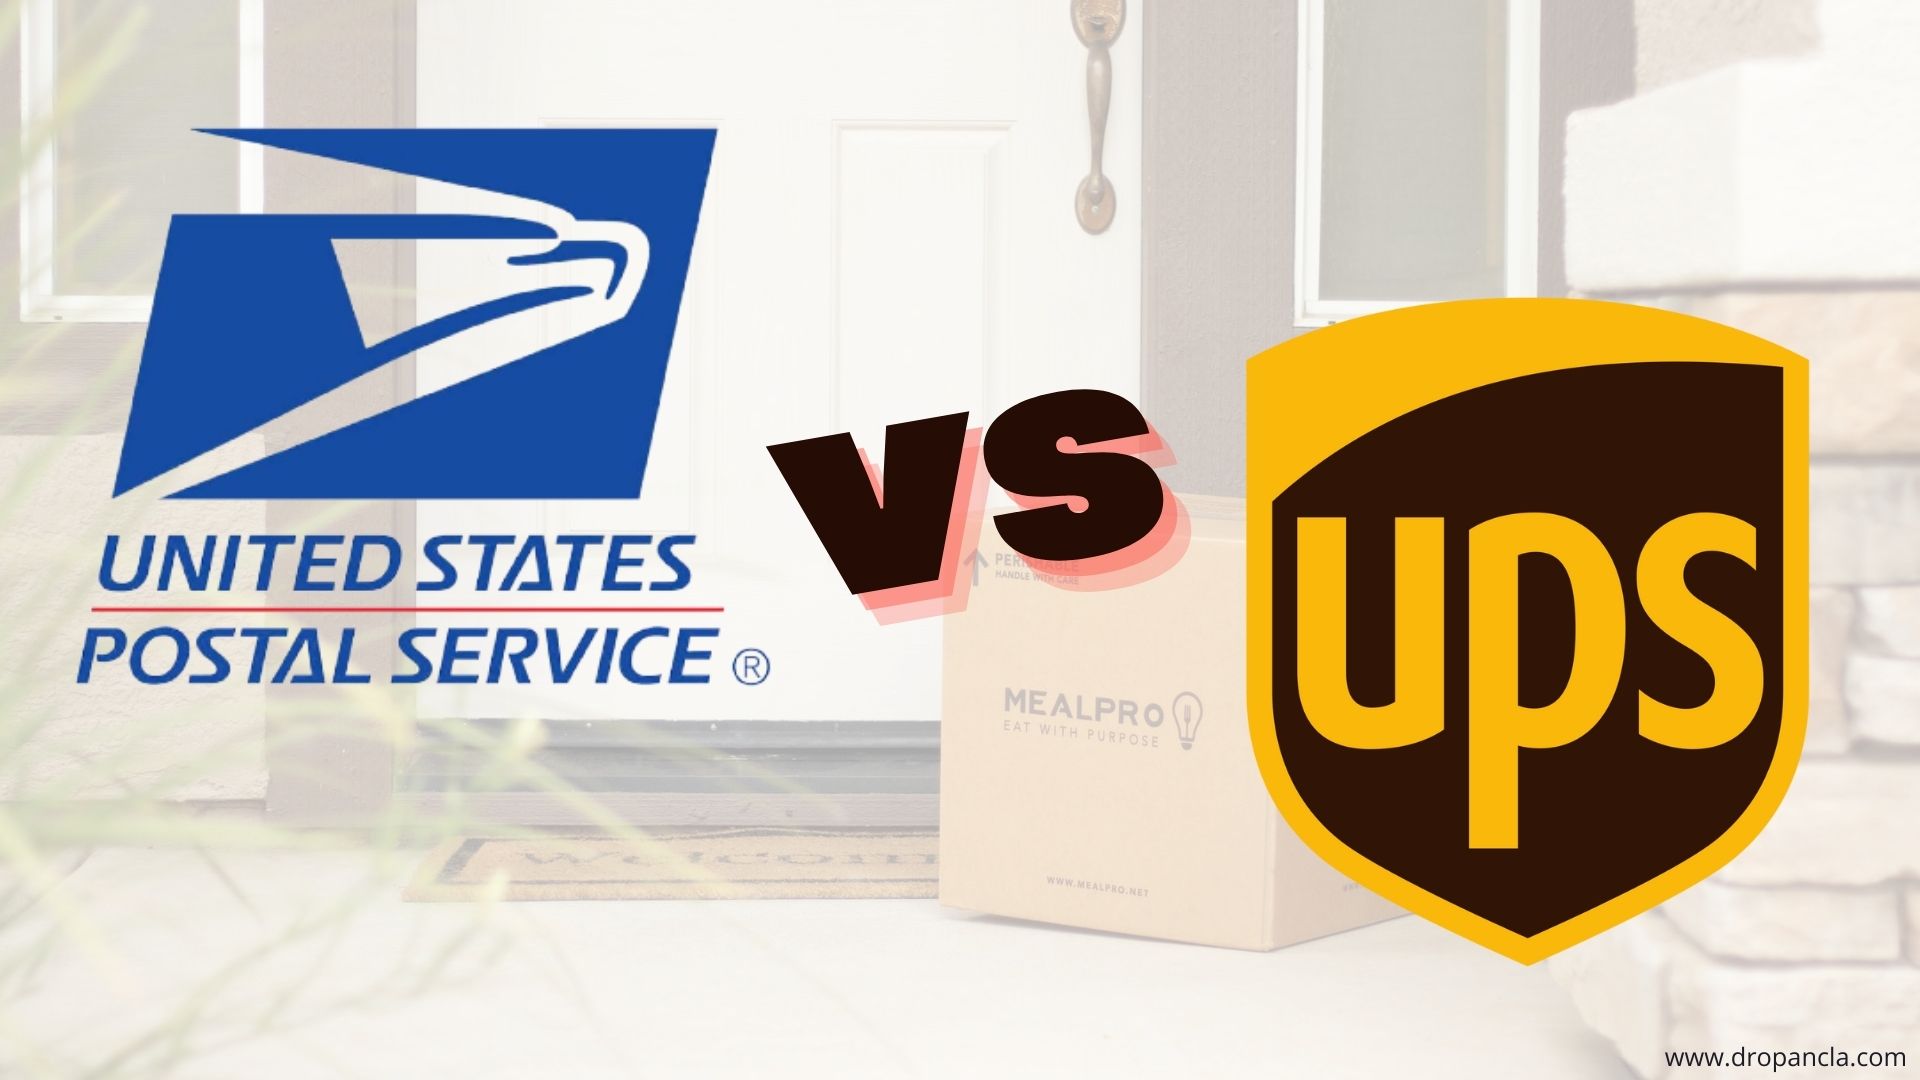  UPS and USPS